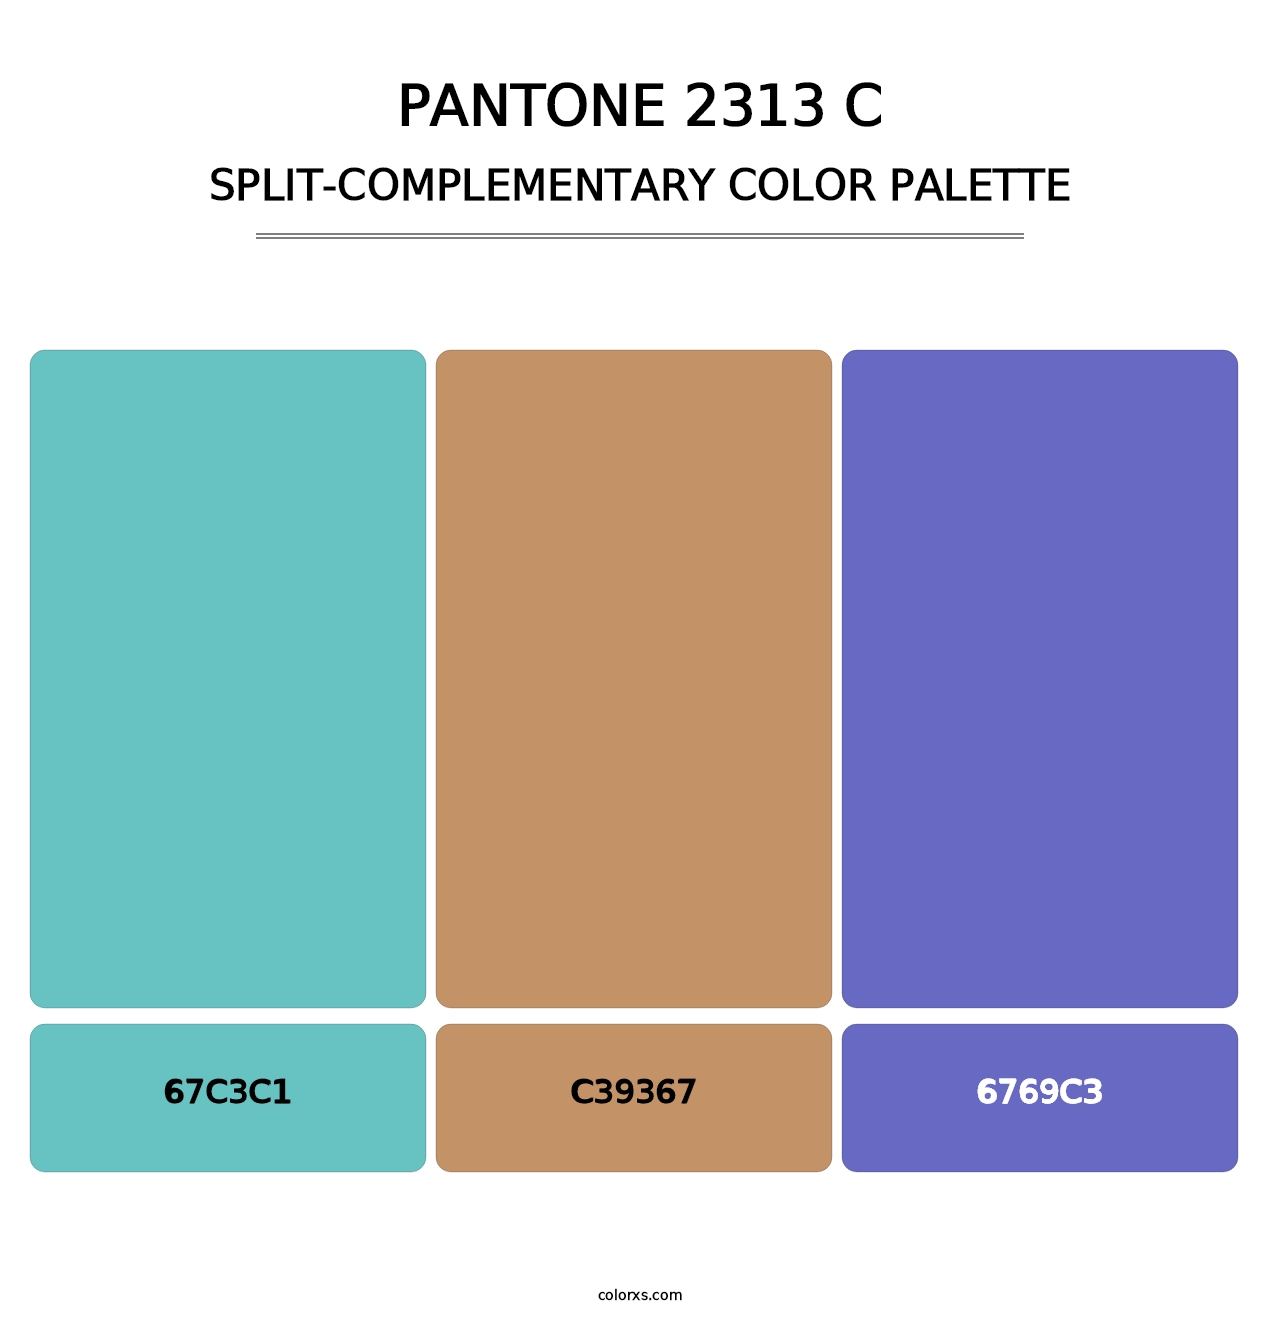 PANTONE 2313 C - Split-Complementary Color Palette